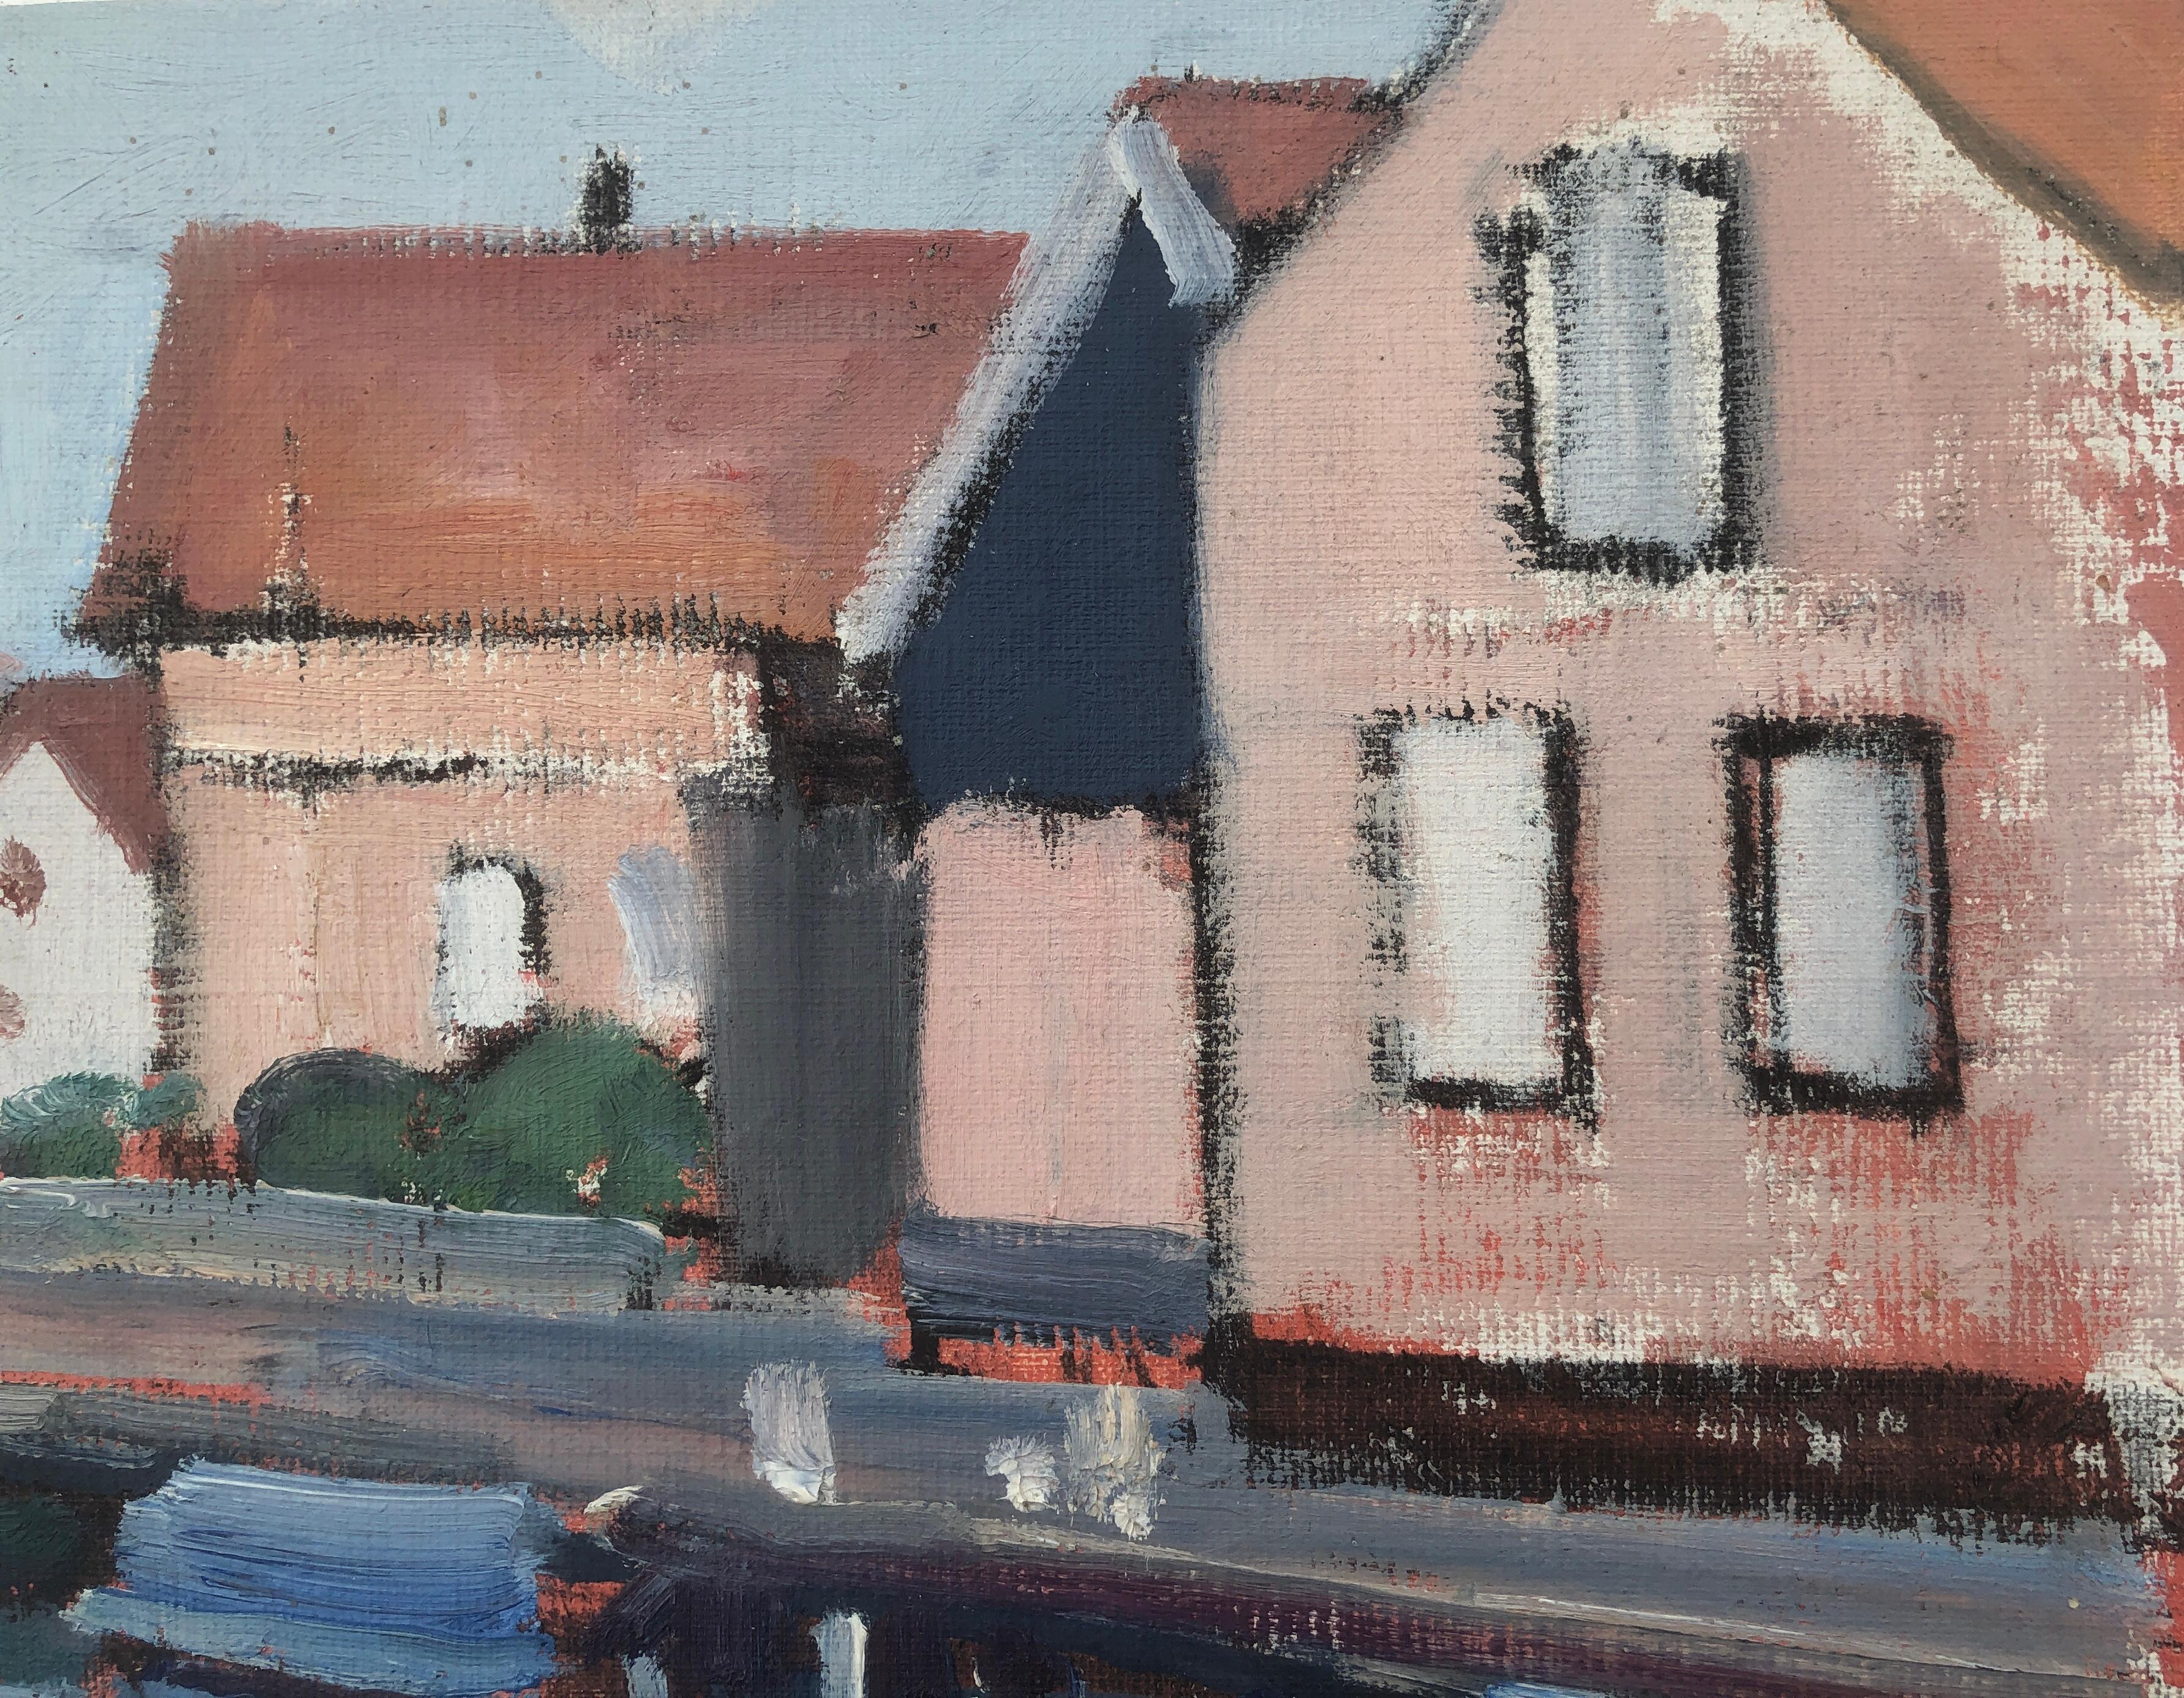 Spakenburg Pays-Bas peinture à l'huile paysage marin paysage urbain - Post-impressionnisme Painting par Rafael Duran Benet